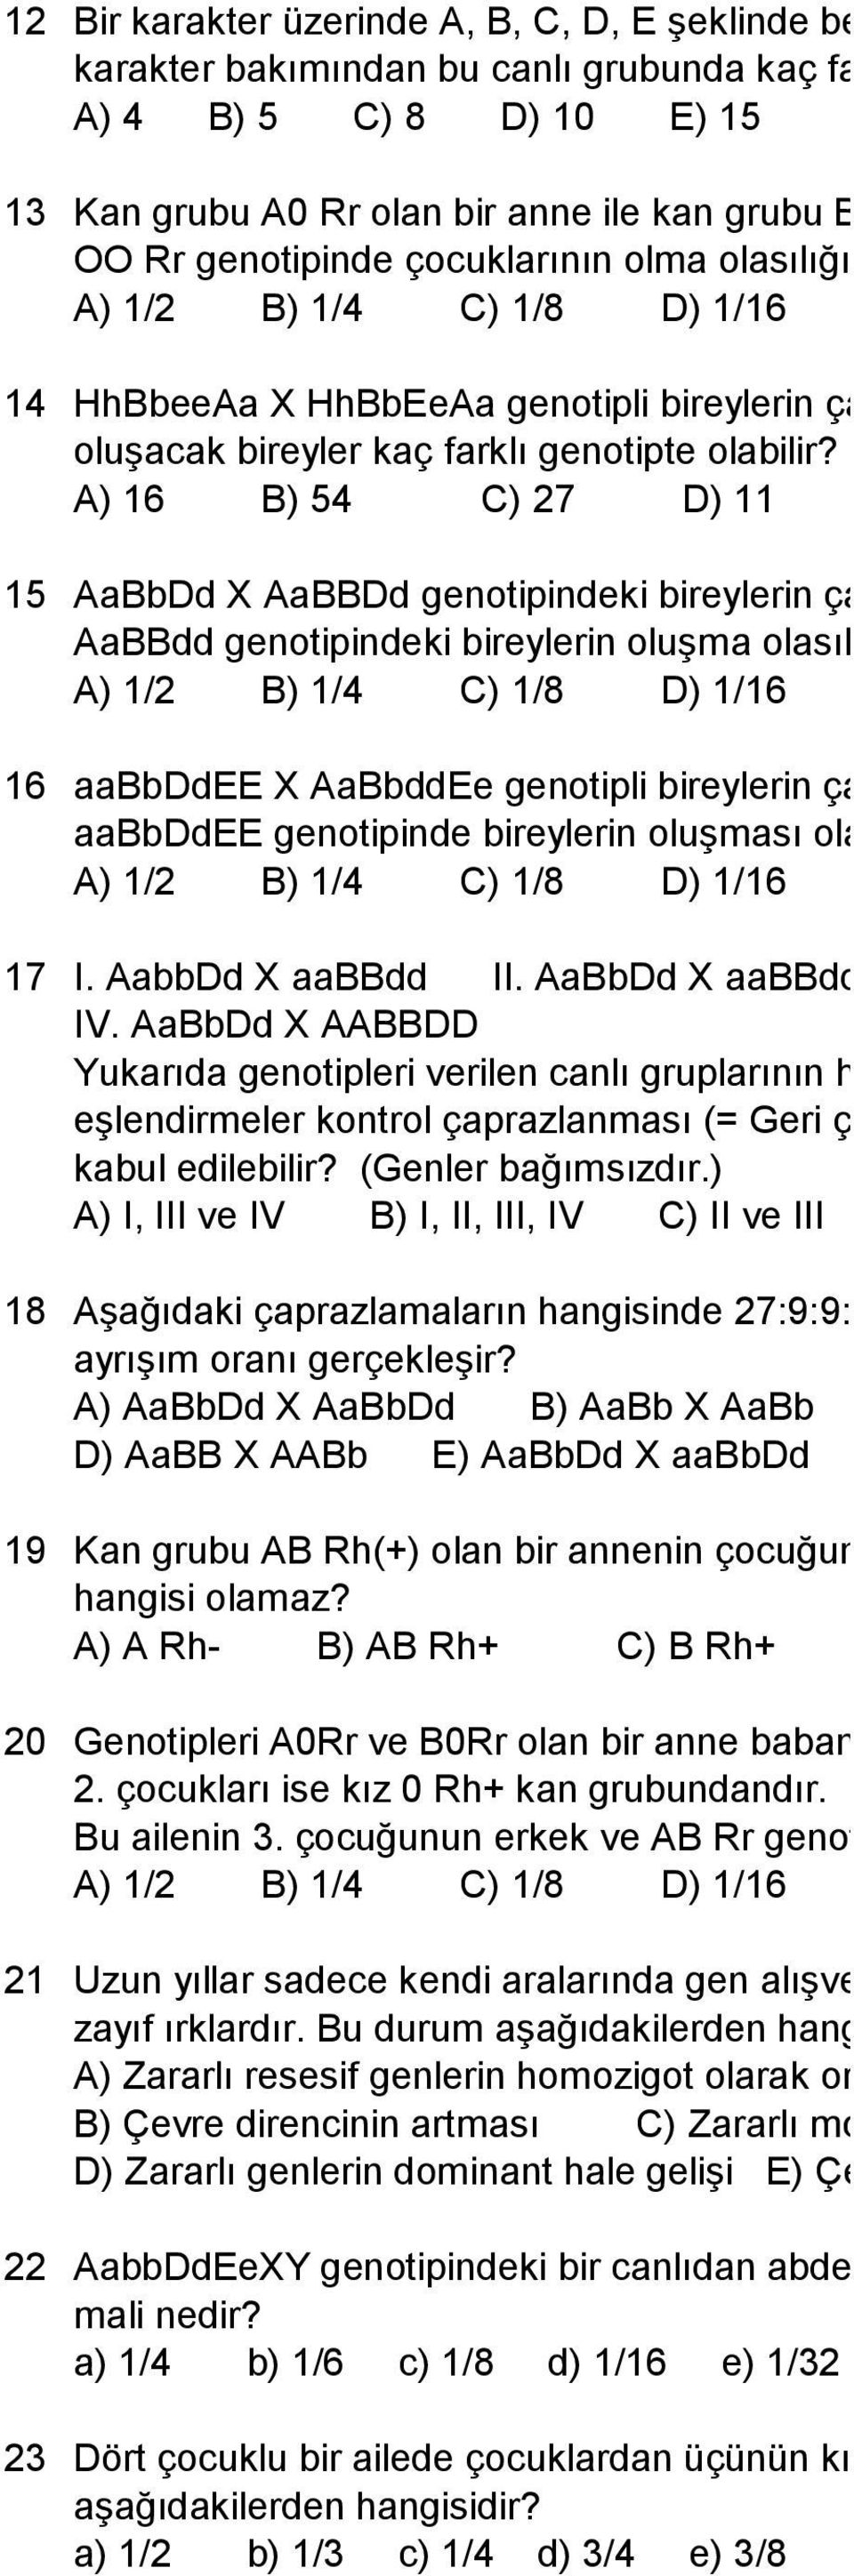 A) 1/2 B) 1/4 C) 1/8 D) 1/16 E) 1/32 14 HhBbeeAa X HhBbEeAa genotipli bireylerin çaprazlanmasından oluşacak bireyler kaç farklı genotipte olabilir?